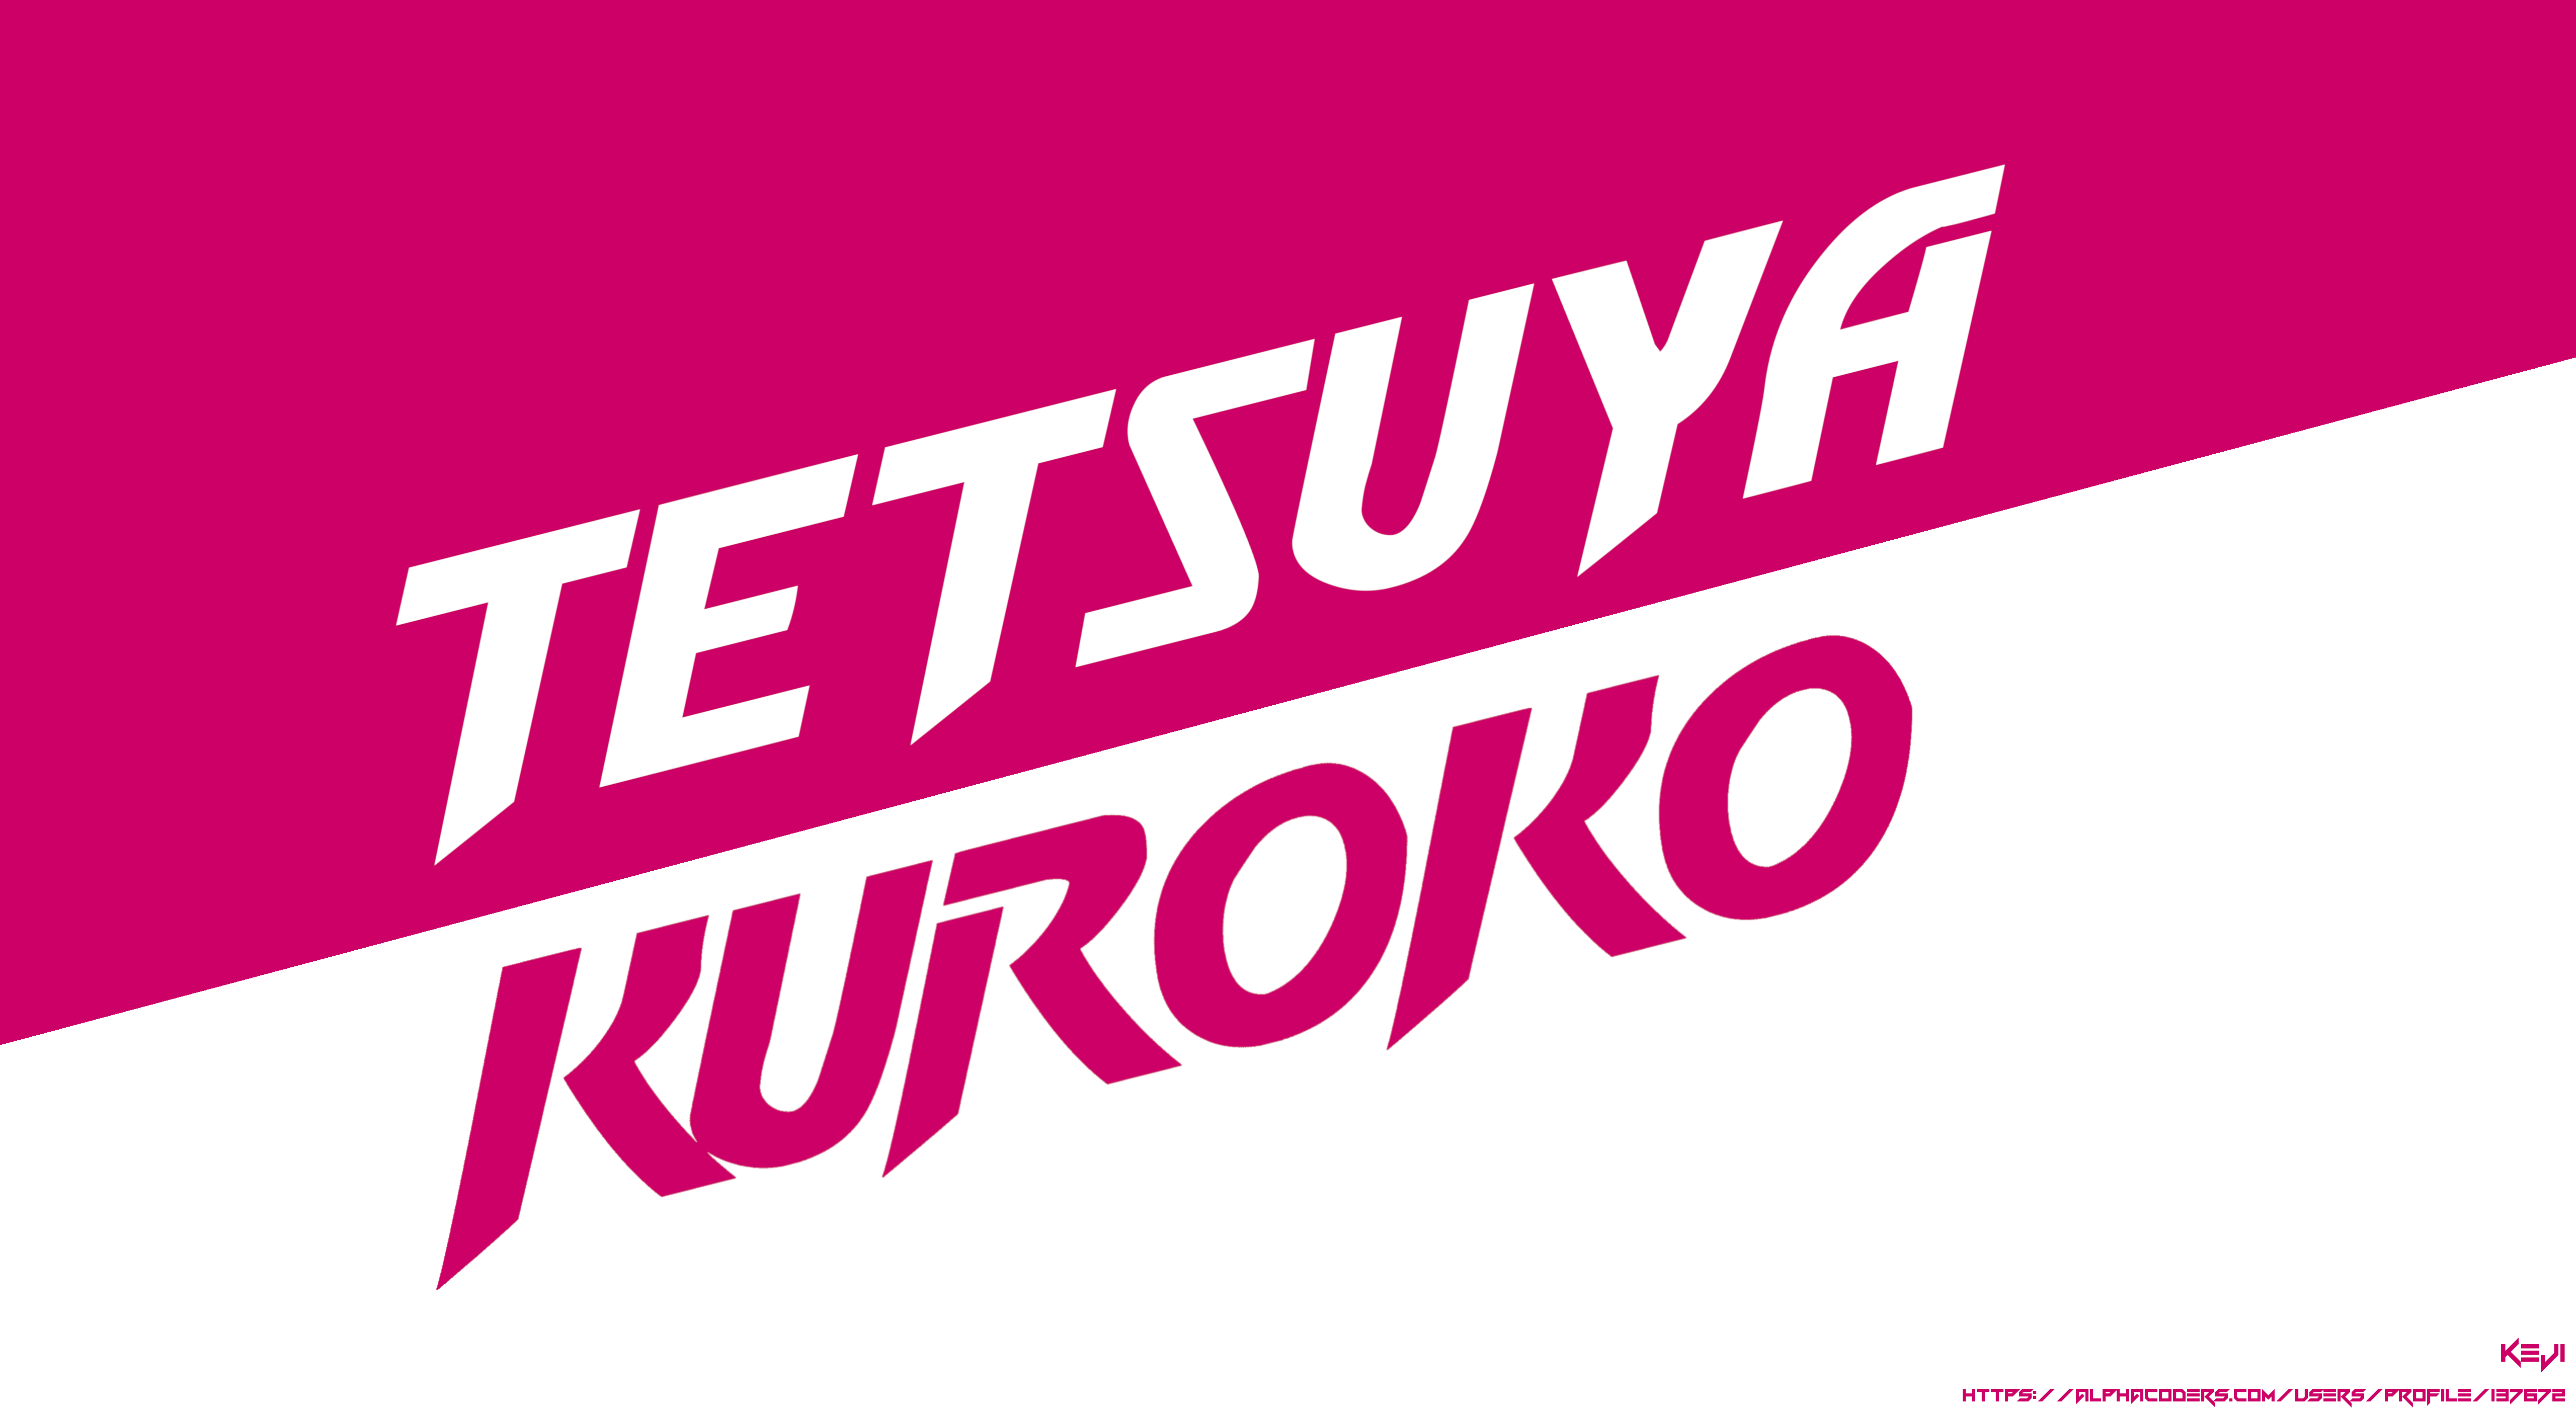 Tetsuya Kuroko 5120x2805